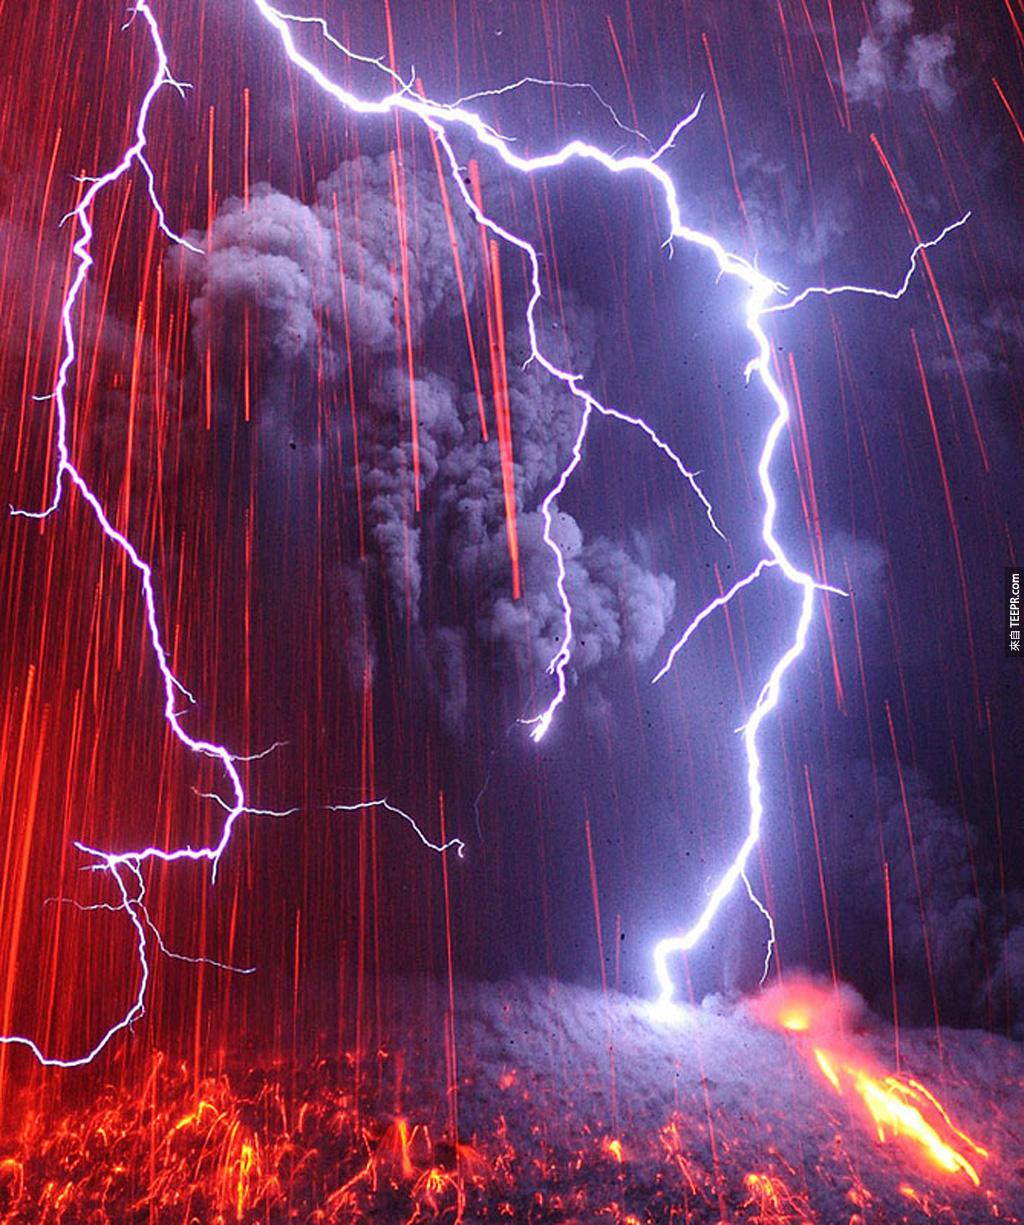 最恐怖的组合: 火山爆发 + 雷电风暴 (日本九州)。